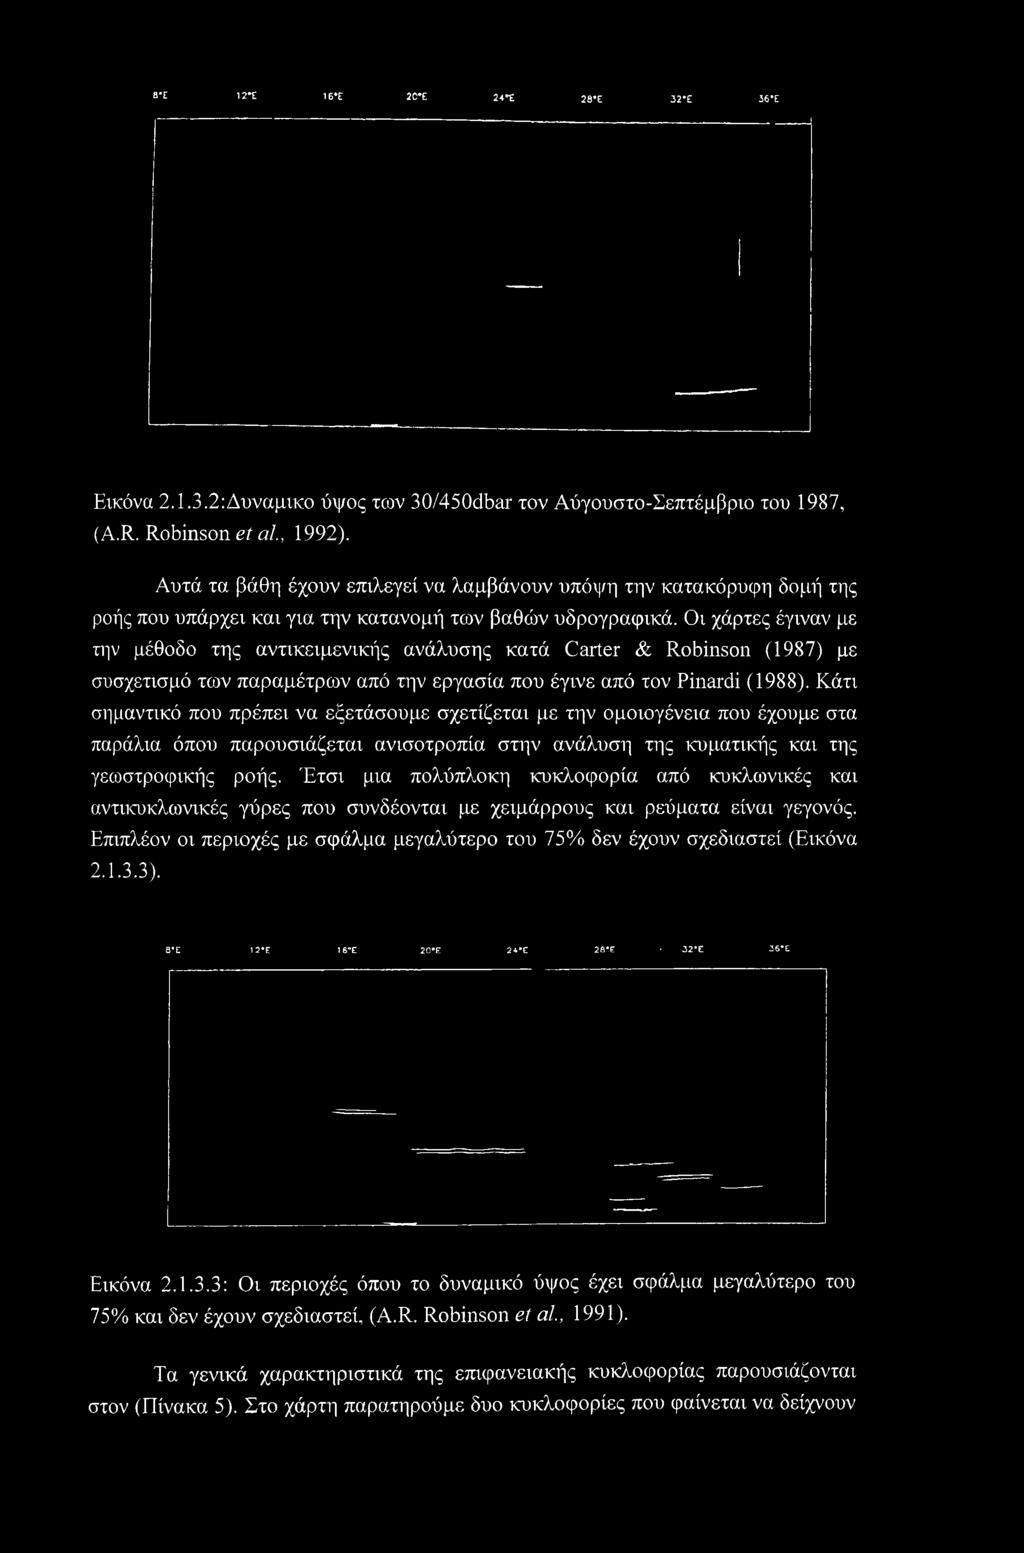 Οι χάρτες έγιναν με την μέθοδο της αντικειμενικής ανάλυσης κατά Carter & Robinson (1987) με συσχετισμό των παραμέτρων από την εργασία που έγινε από τον Pinardi (1988).